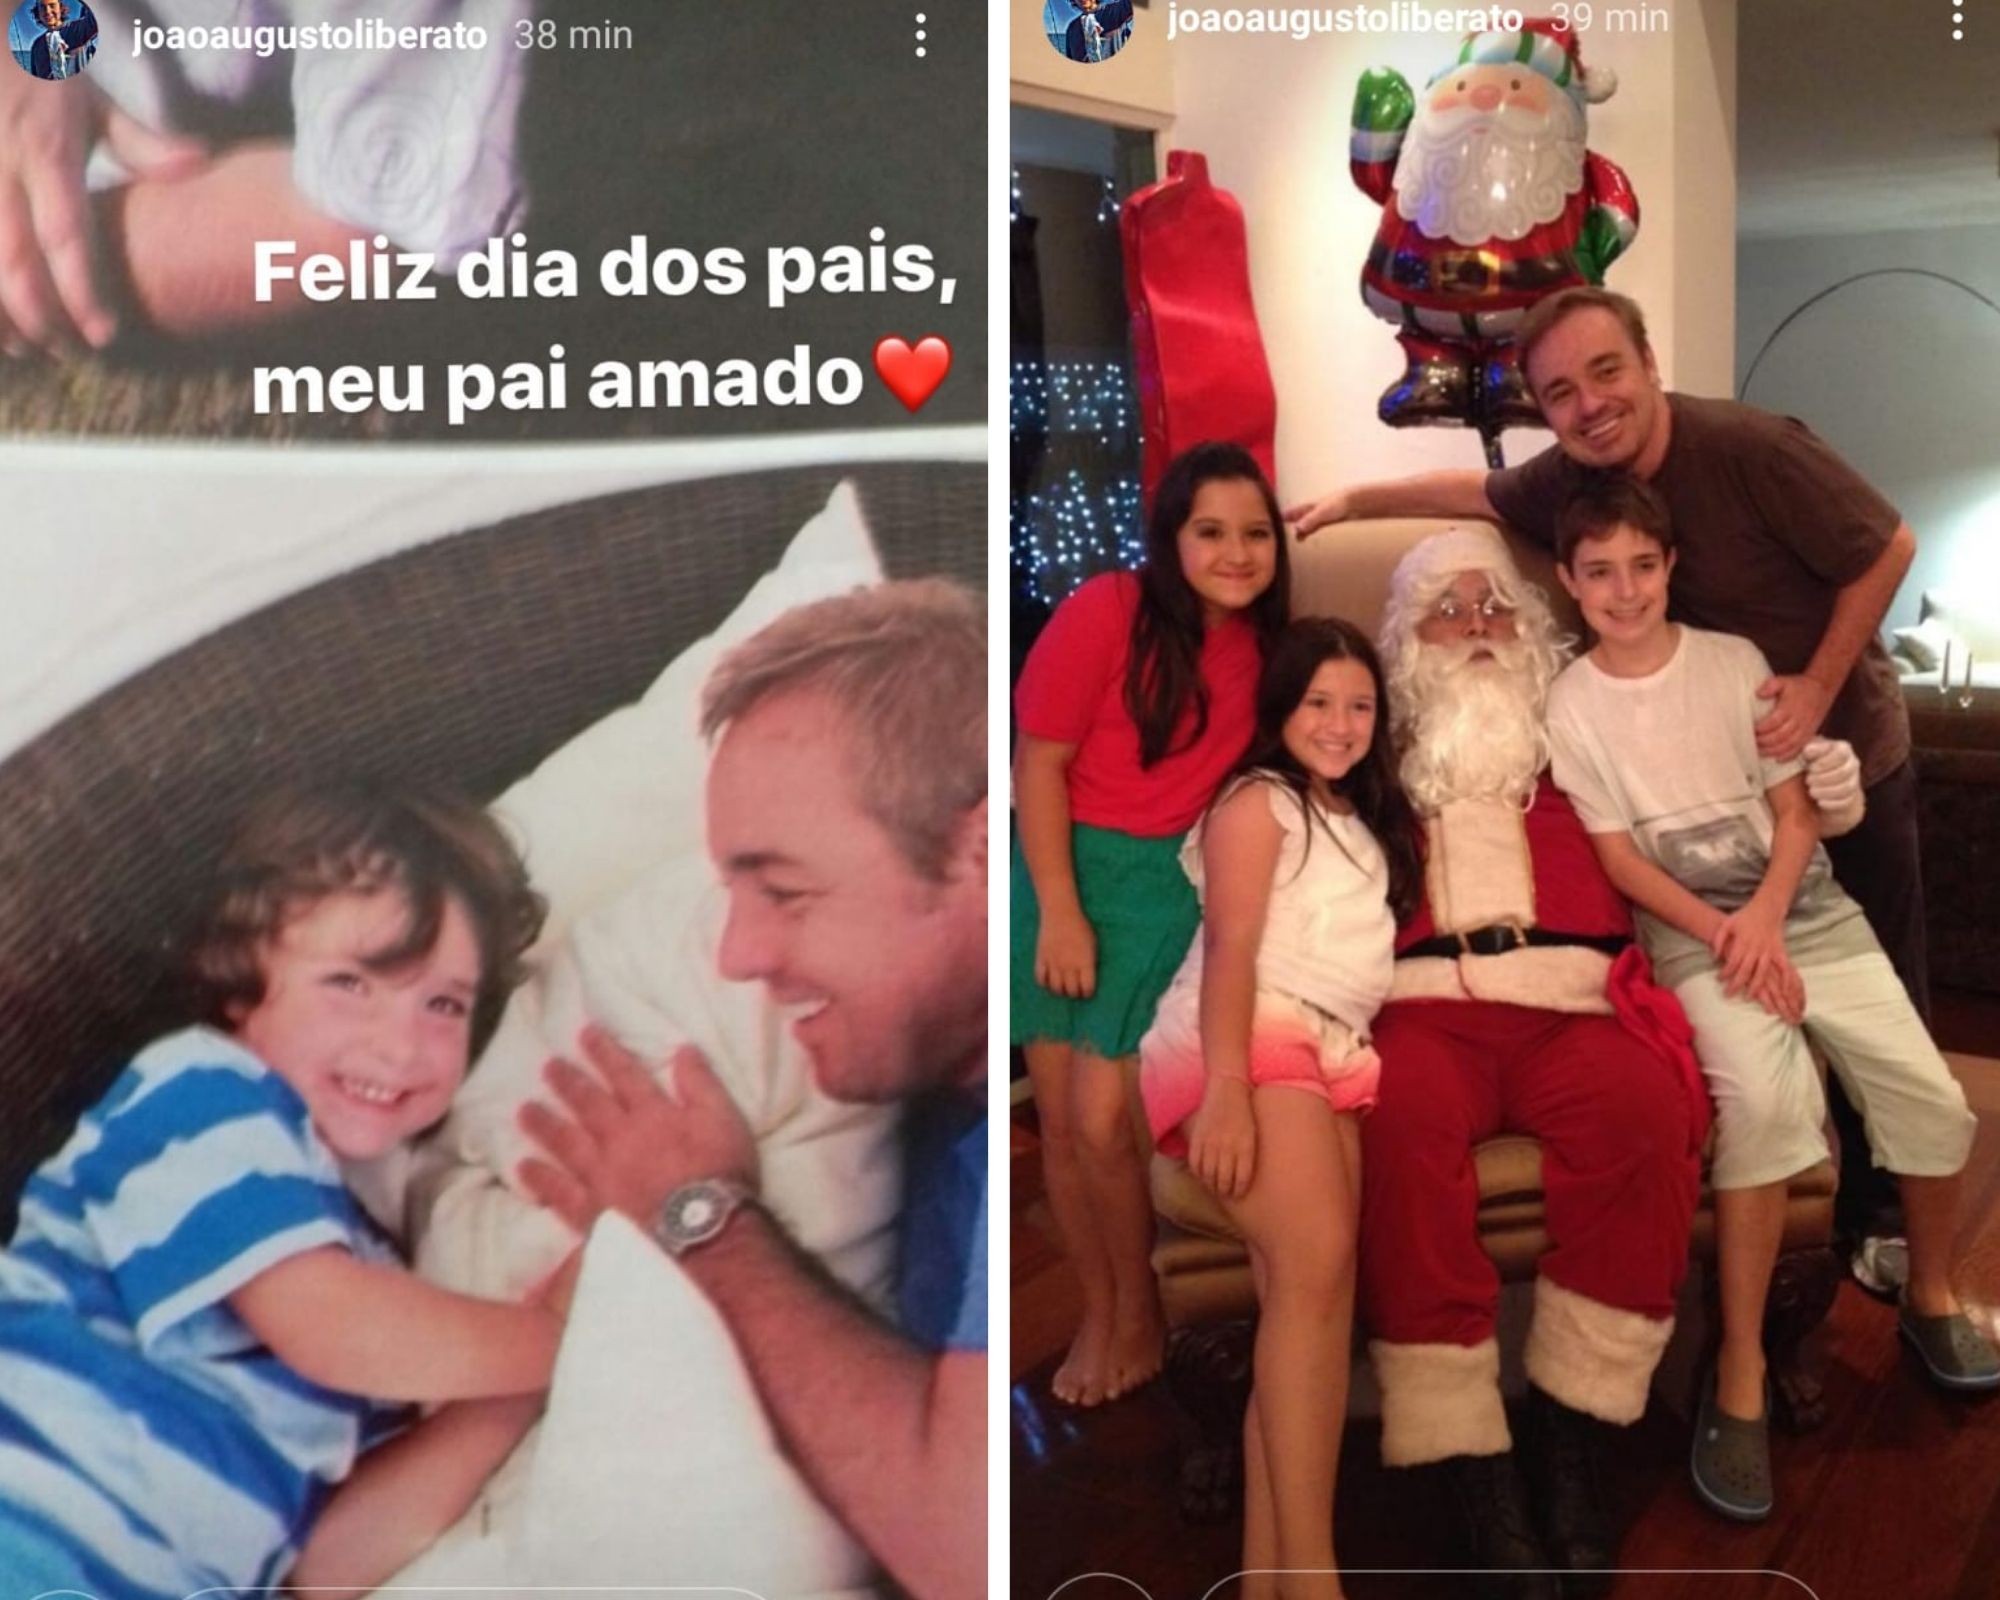 João Augusto, filho de Gugu Liberato, lembra o pai no Dia dos Pais (Foto: Reprodução/Instagram)